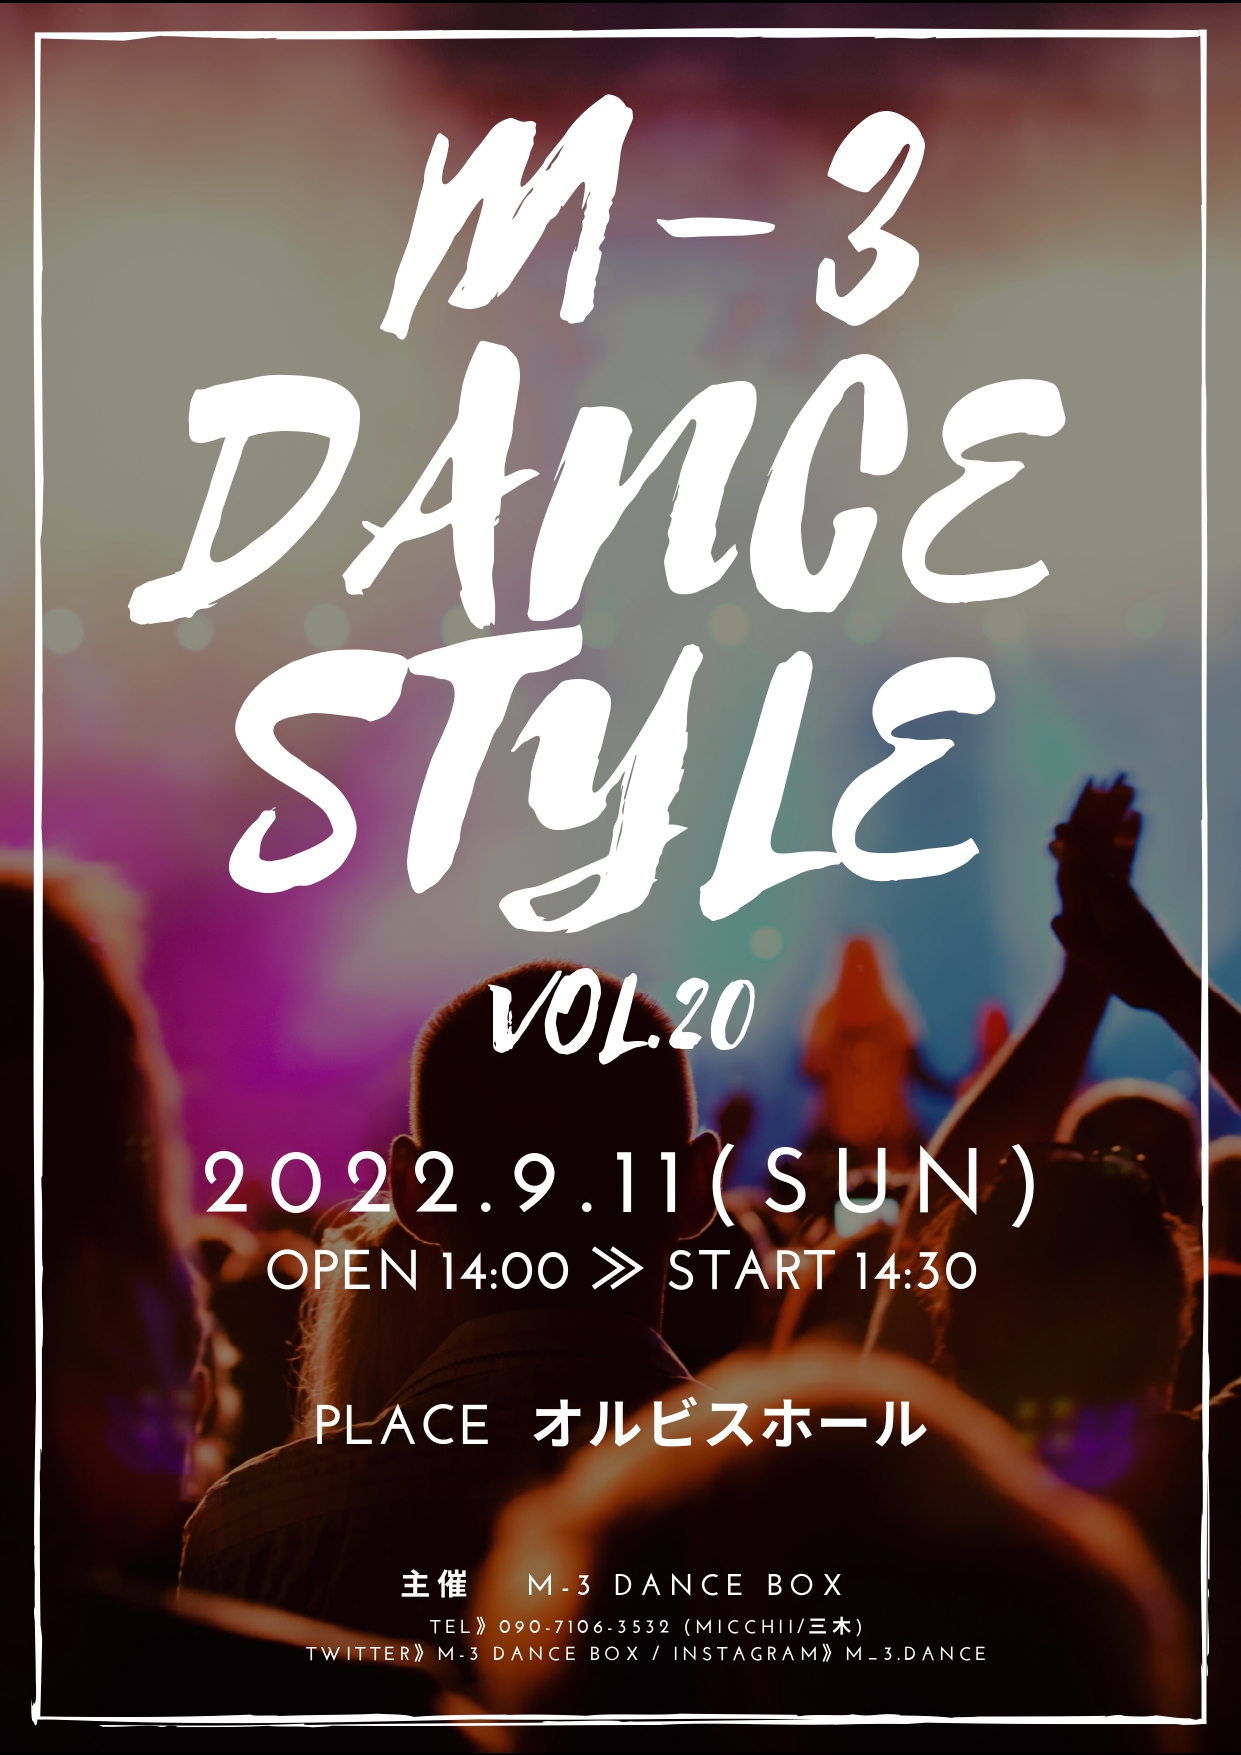 【オルビスホール情報】9/11(日) 「M-3 DANCE STYLE VOL.20」開催のお知らせ！